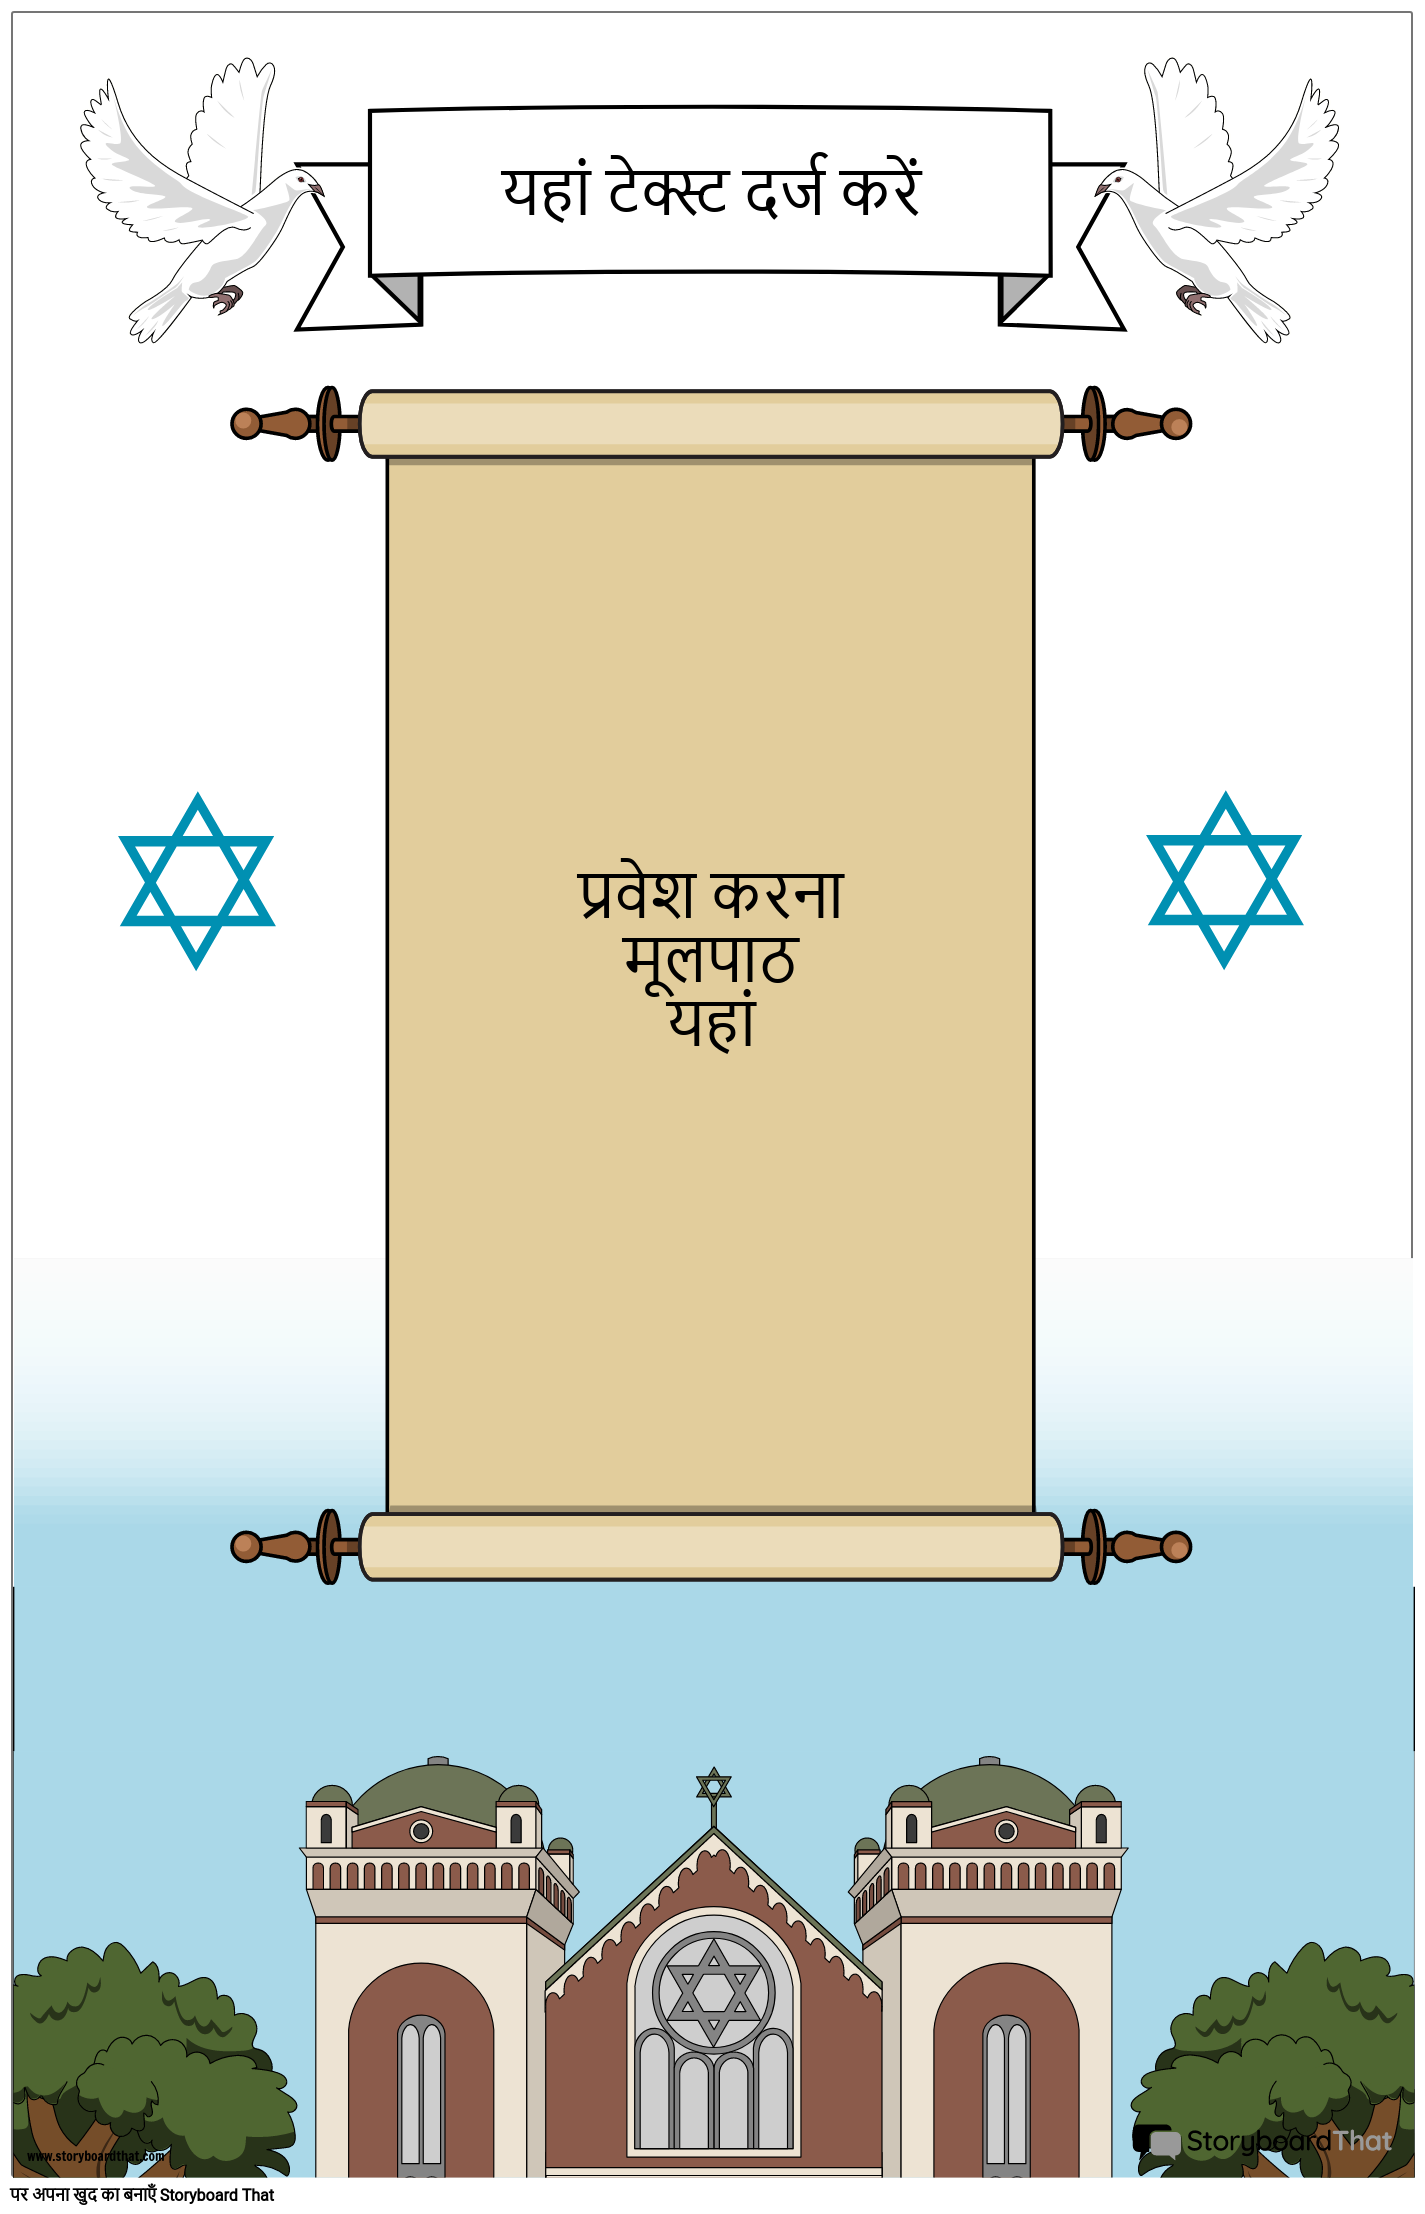 स्क्रॉल के साथ यहूदी पोस्टर